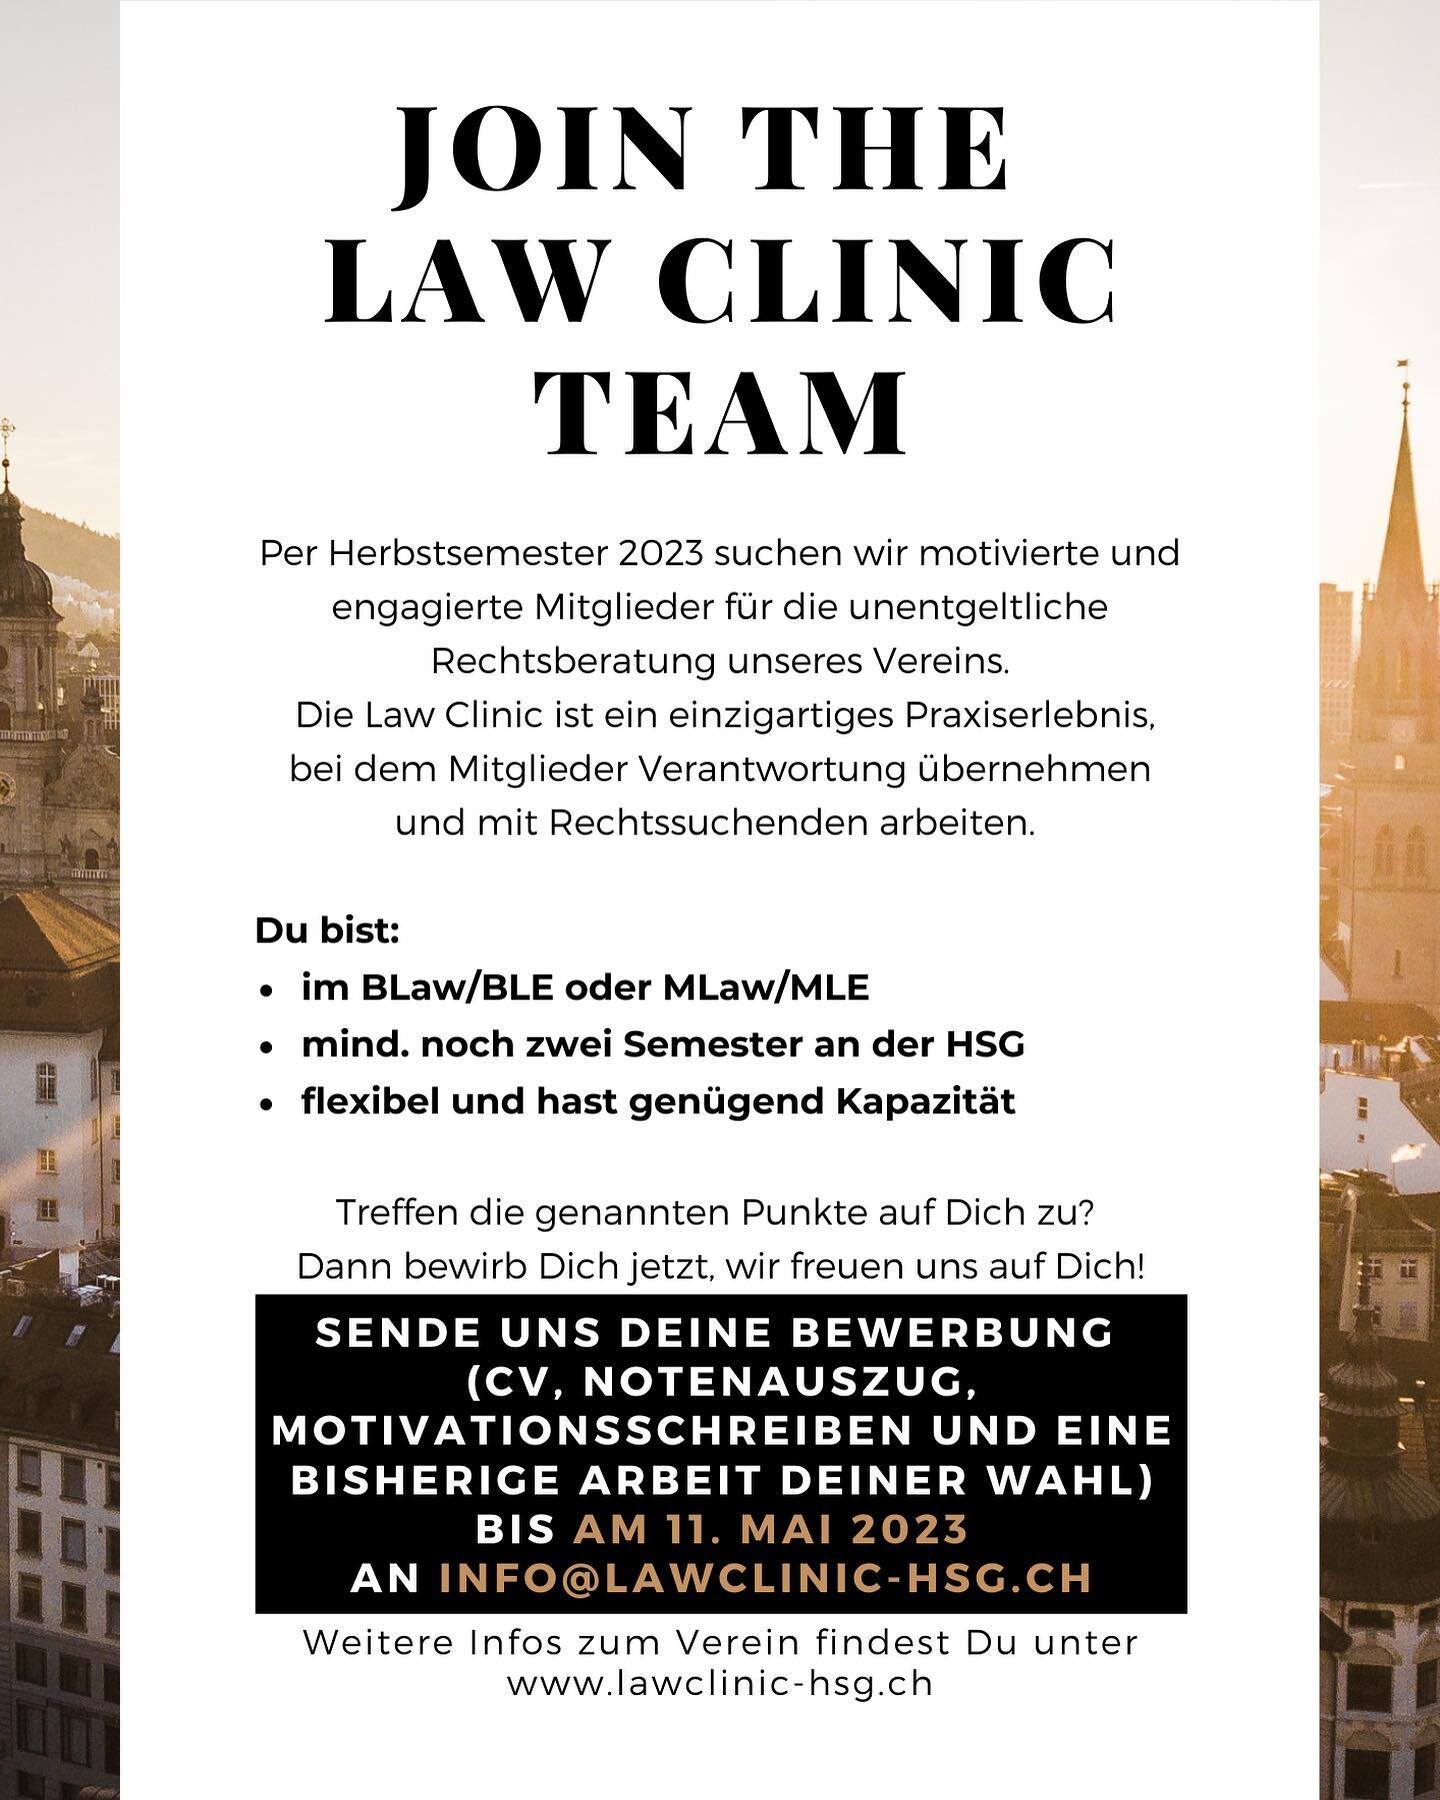 Die Law Clinic an der Universit&auml;t St. Gallen sucht neue Mitglieder per Herbstsemester 2023! Hast Du Interesse daran, Rechtsf&auml;lle zu bearbeiten? Dann bewirb Dich jetzt!